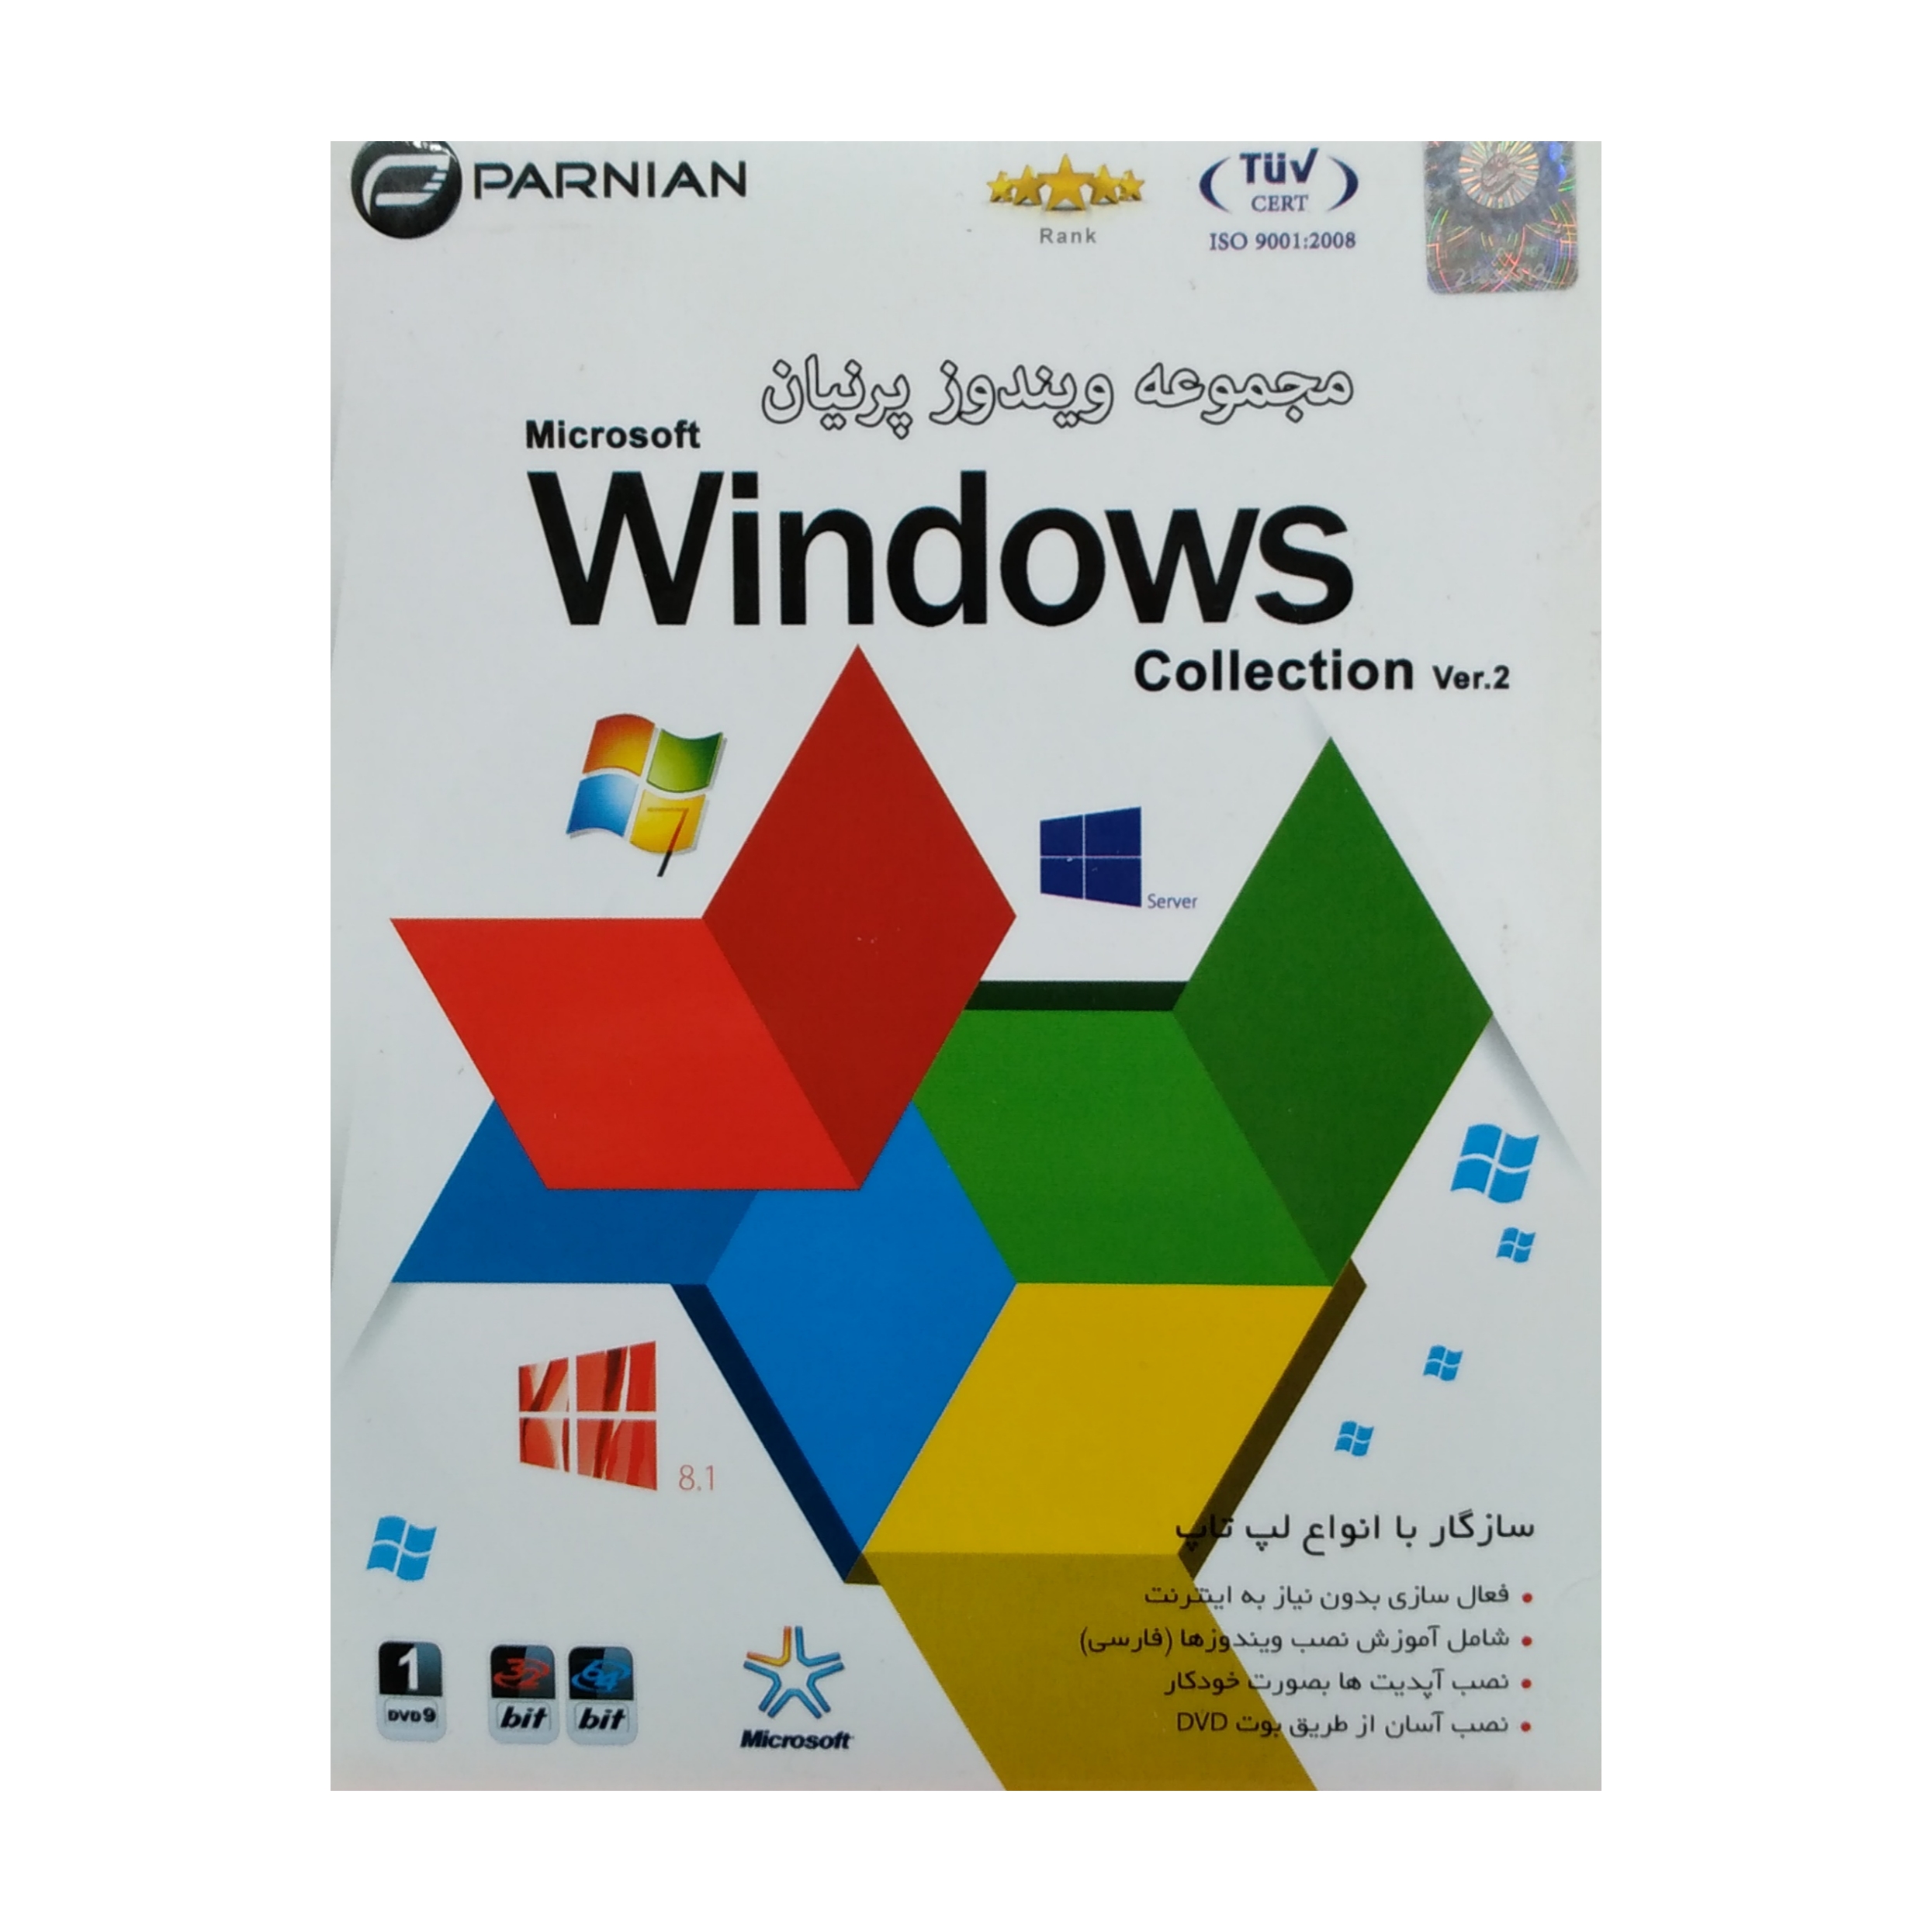 سیستم عامل collection ver.2 + windows 8.1 نشر پرنیان